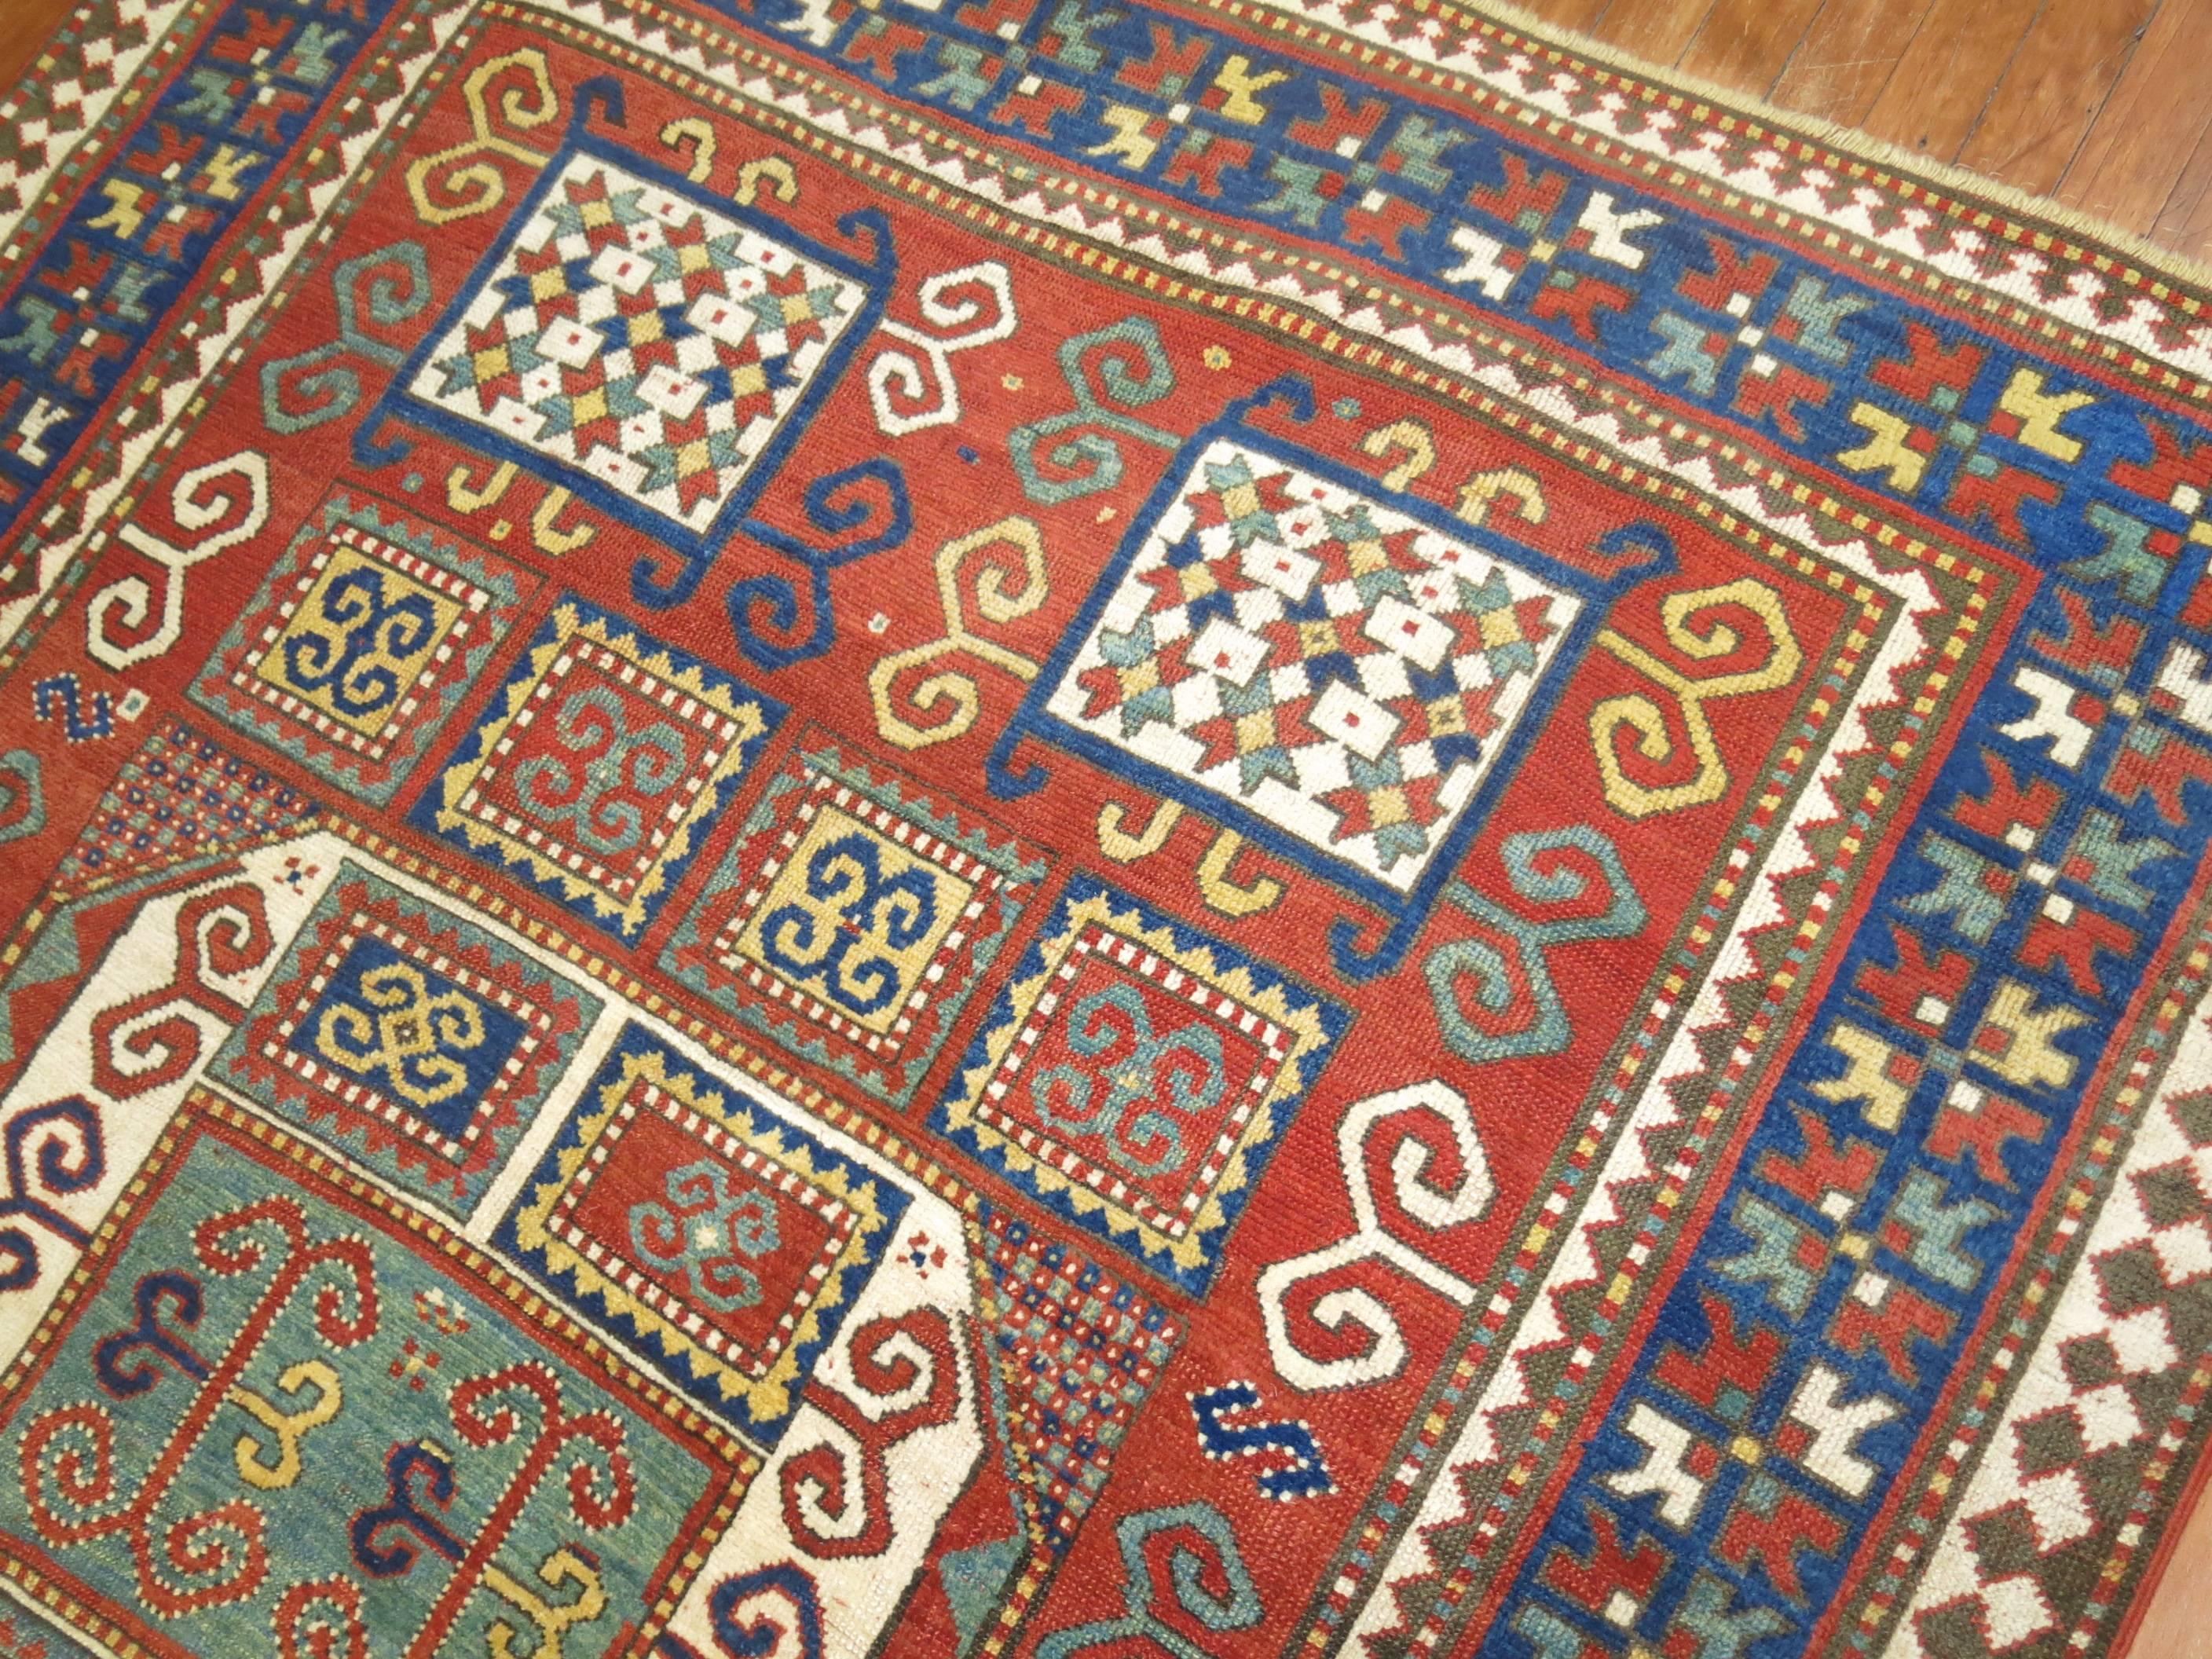 Hand-Woven Antique Karachopt Kazak Rug, 'Karachop'